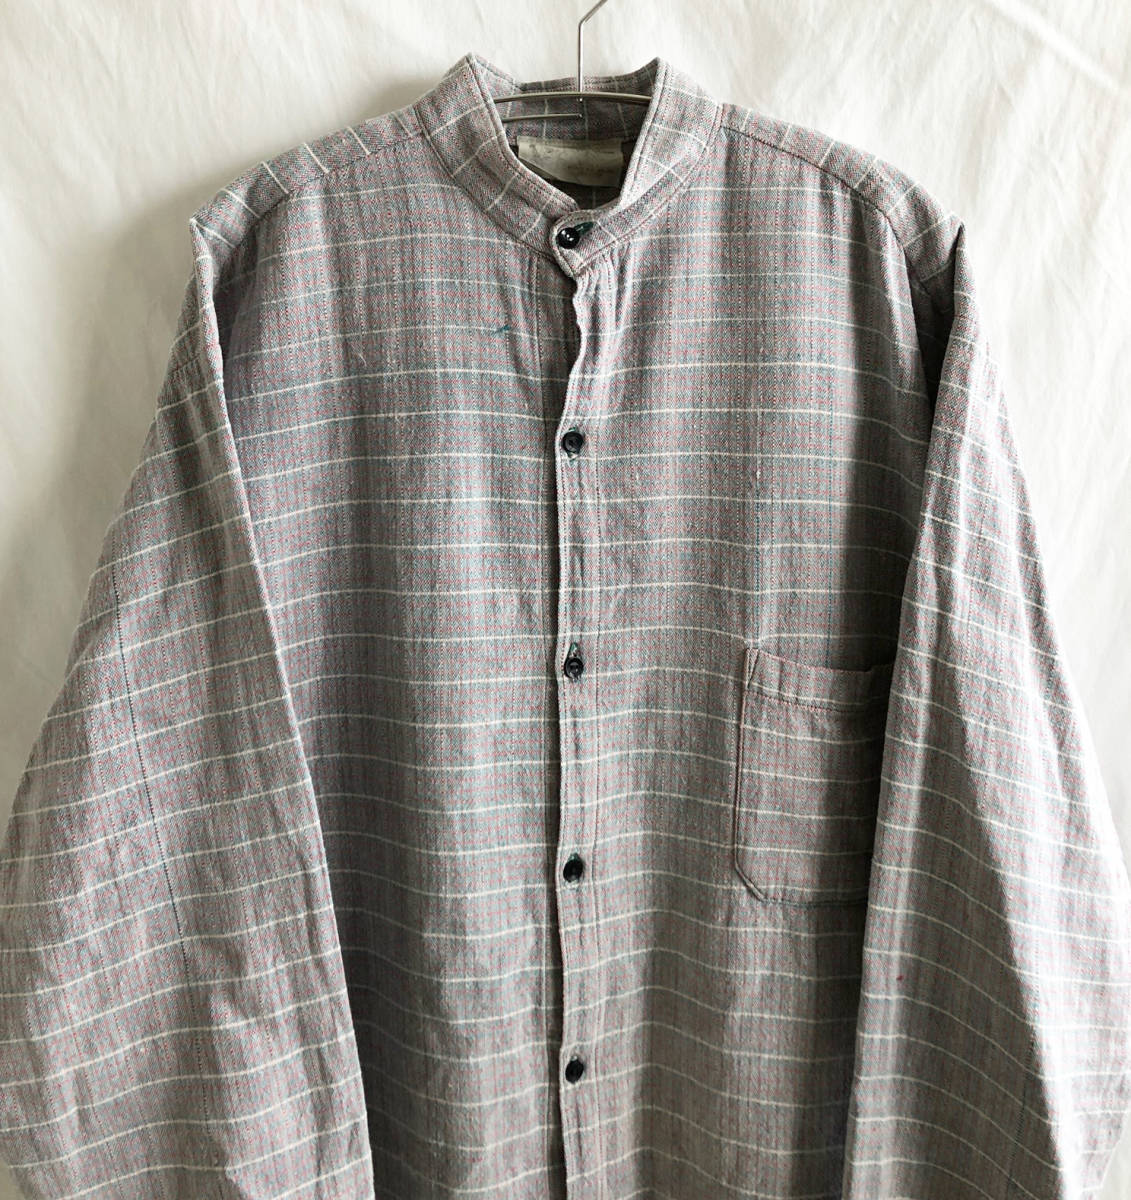  быстрое решение [90\'s Vintage /Unique Batik]neitib no color проверка рубашка /XL/ sax тканый / большой размер / America производства (p-232-3-5)